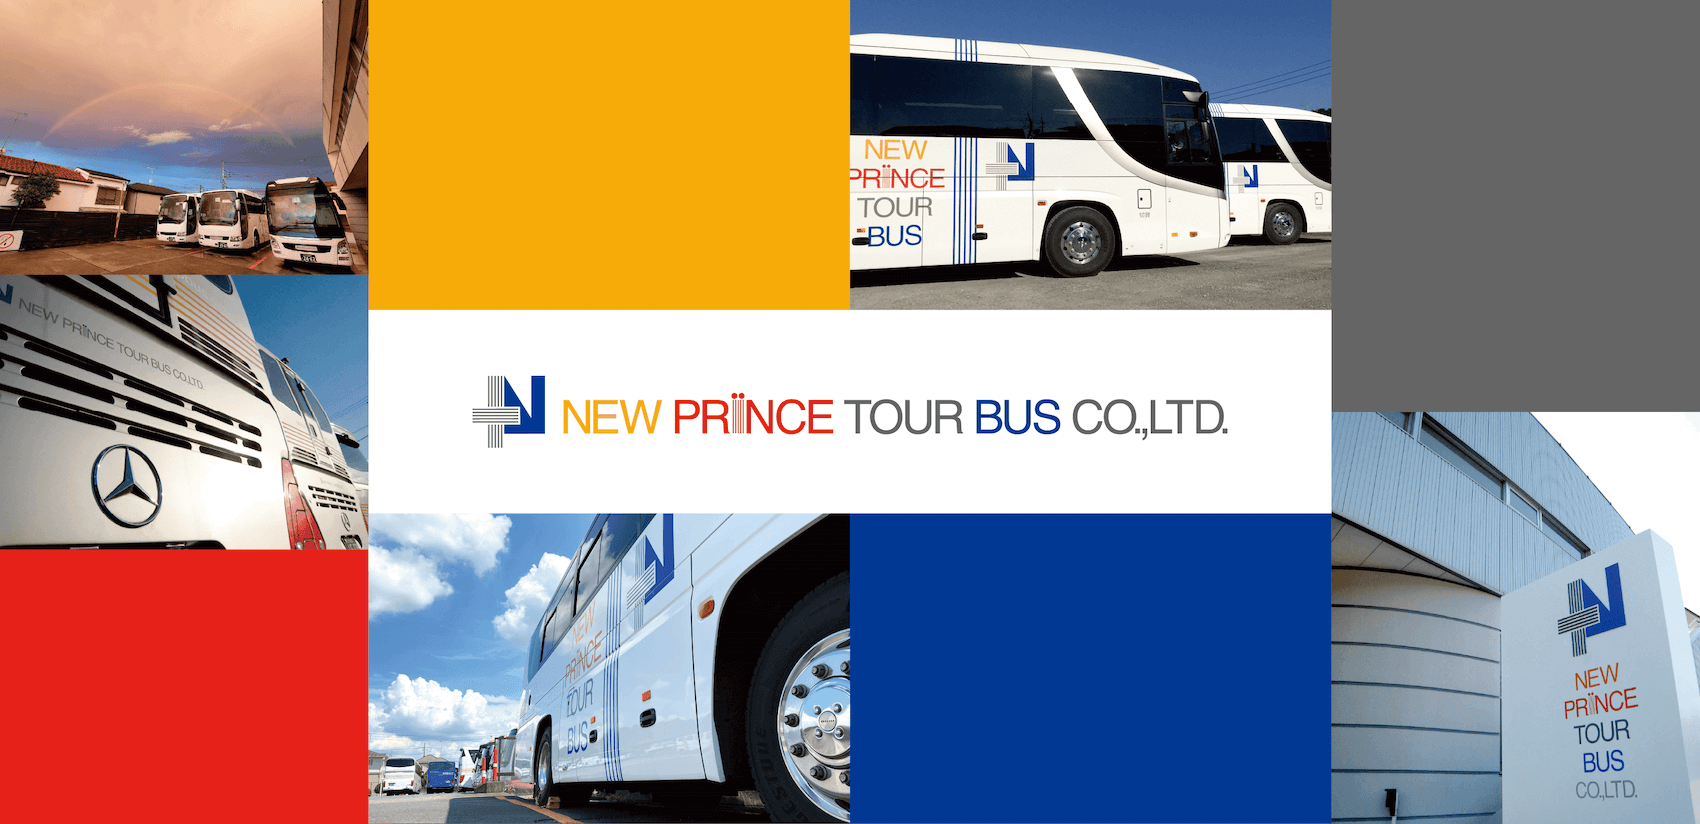 NEW PRINCE TOUR BUS CO.,LTD.